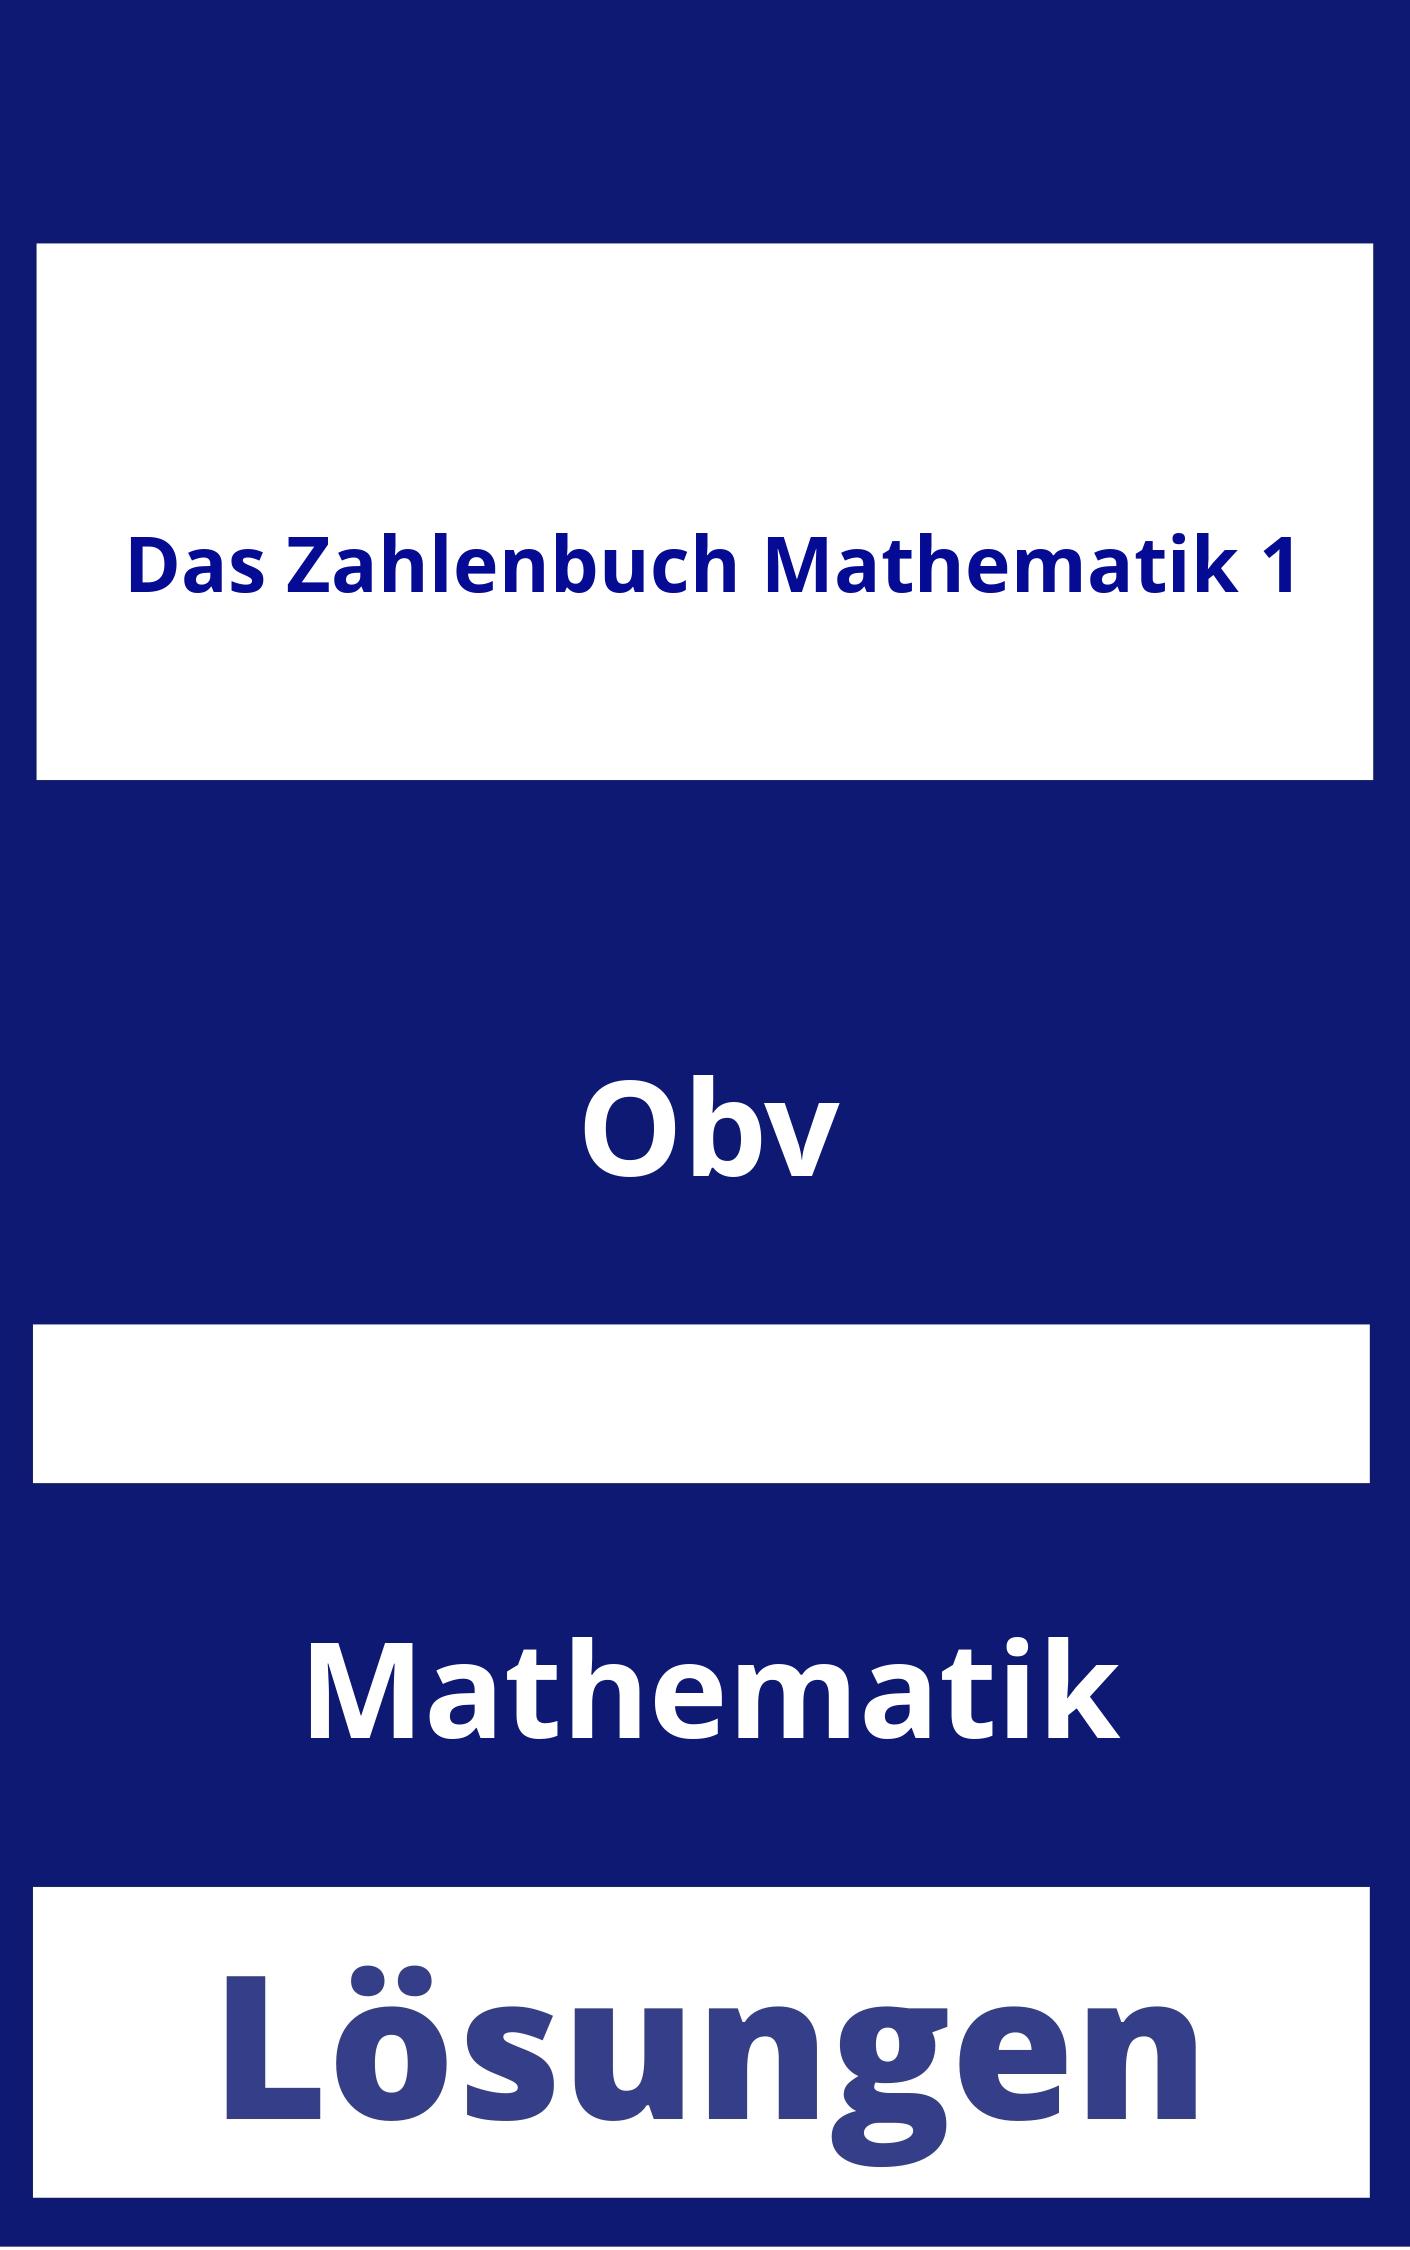 Das Zahlenbuch Mathematik 1 Lösungen PDF